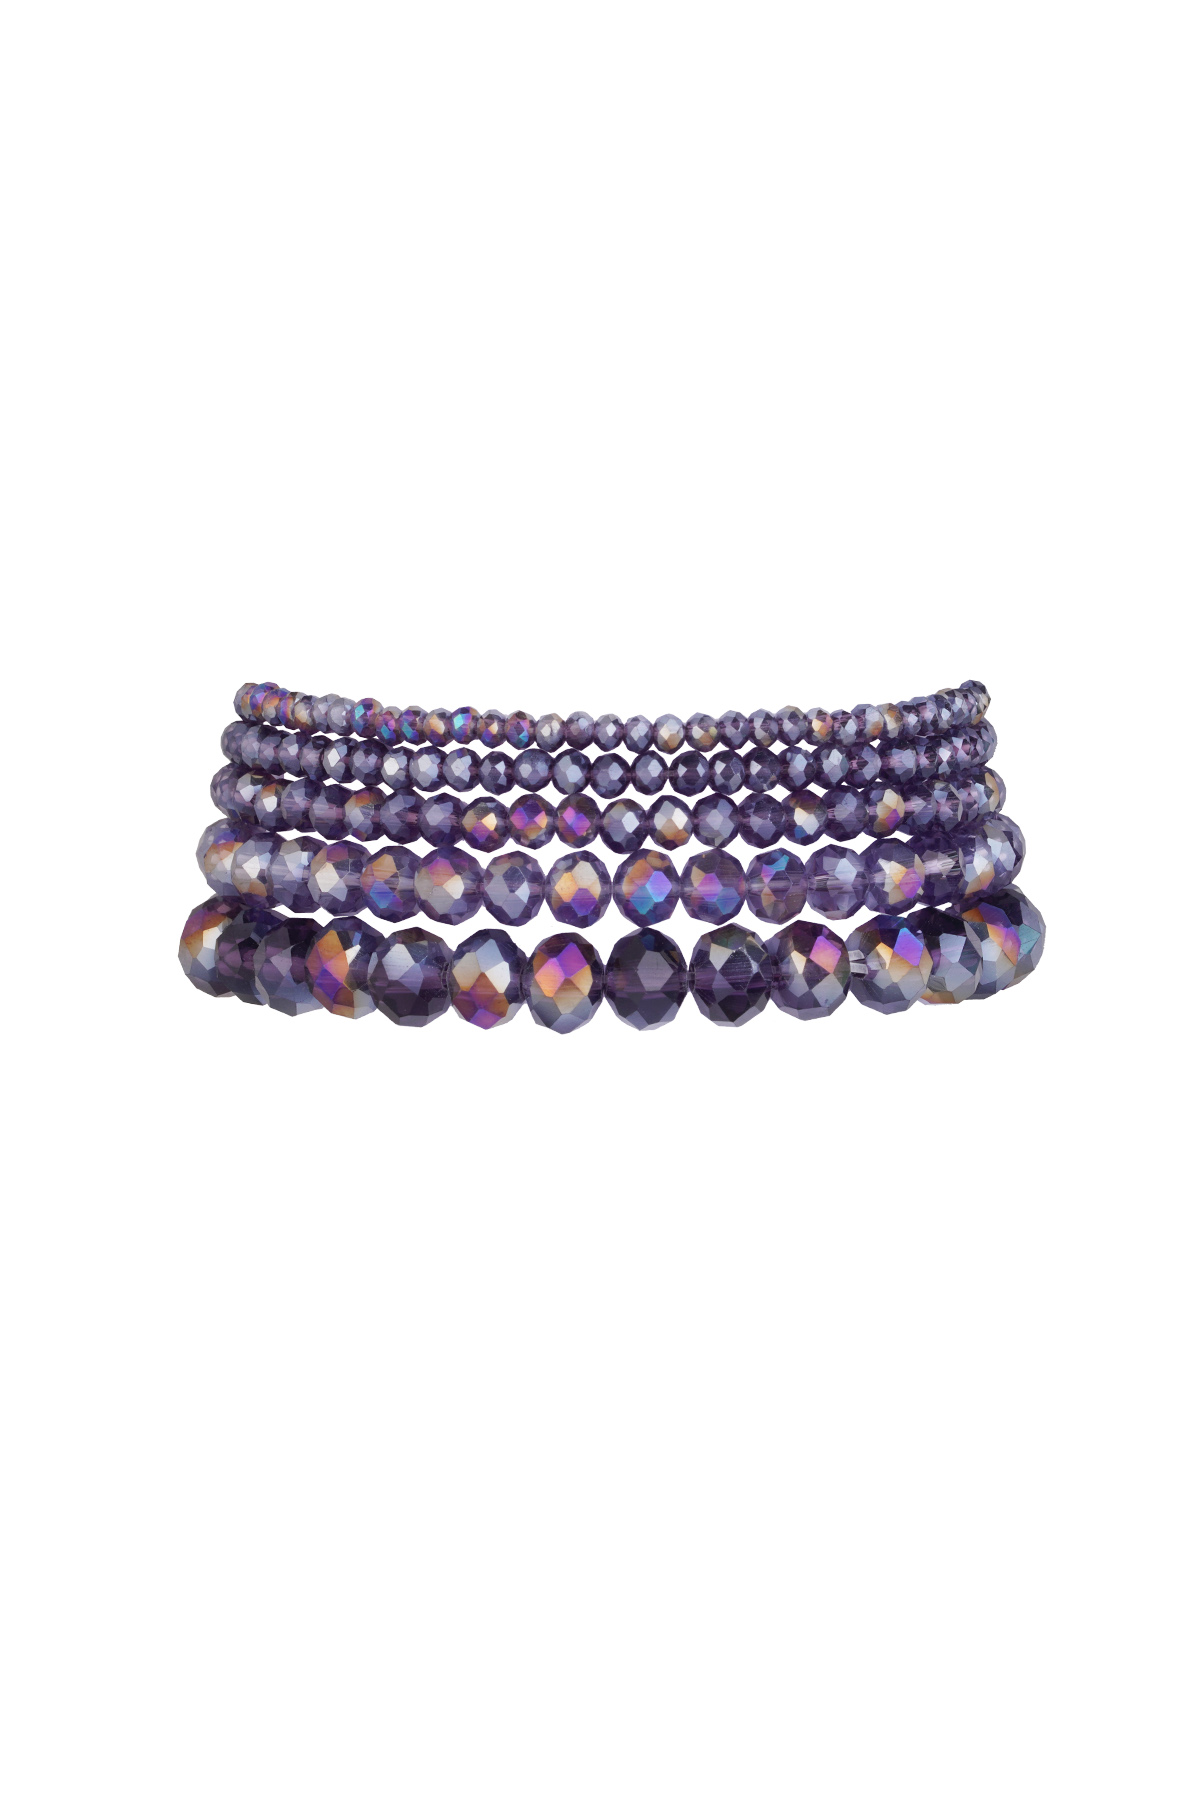 Set van 5 kristal armbanden paars - lavendel